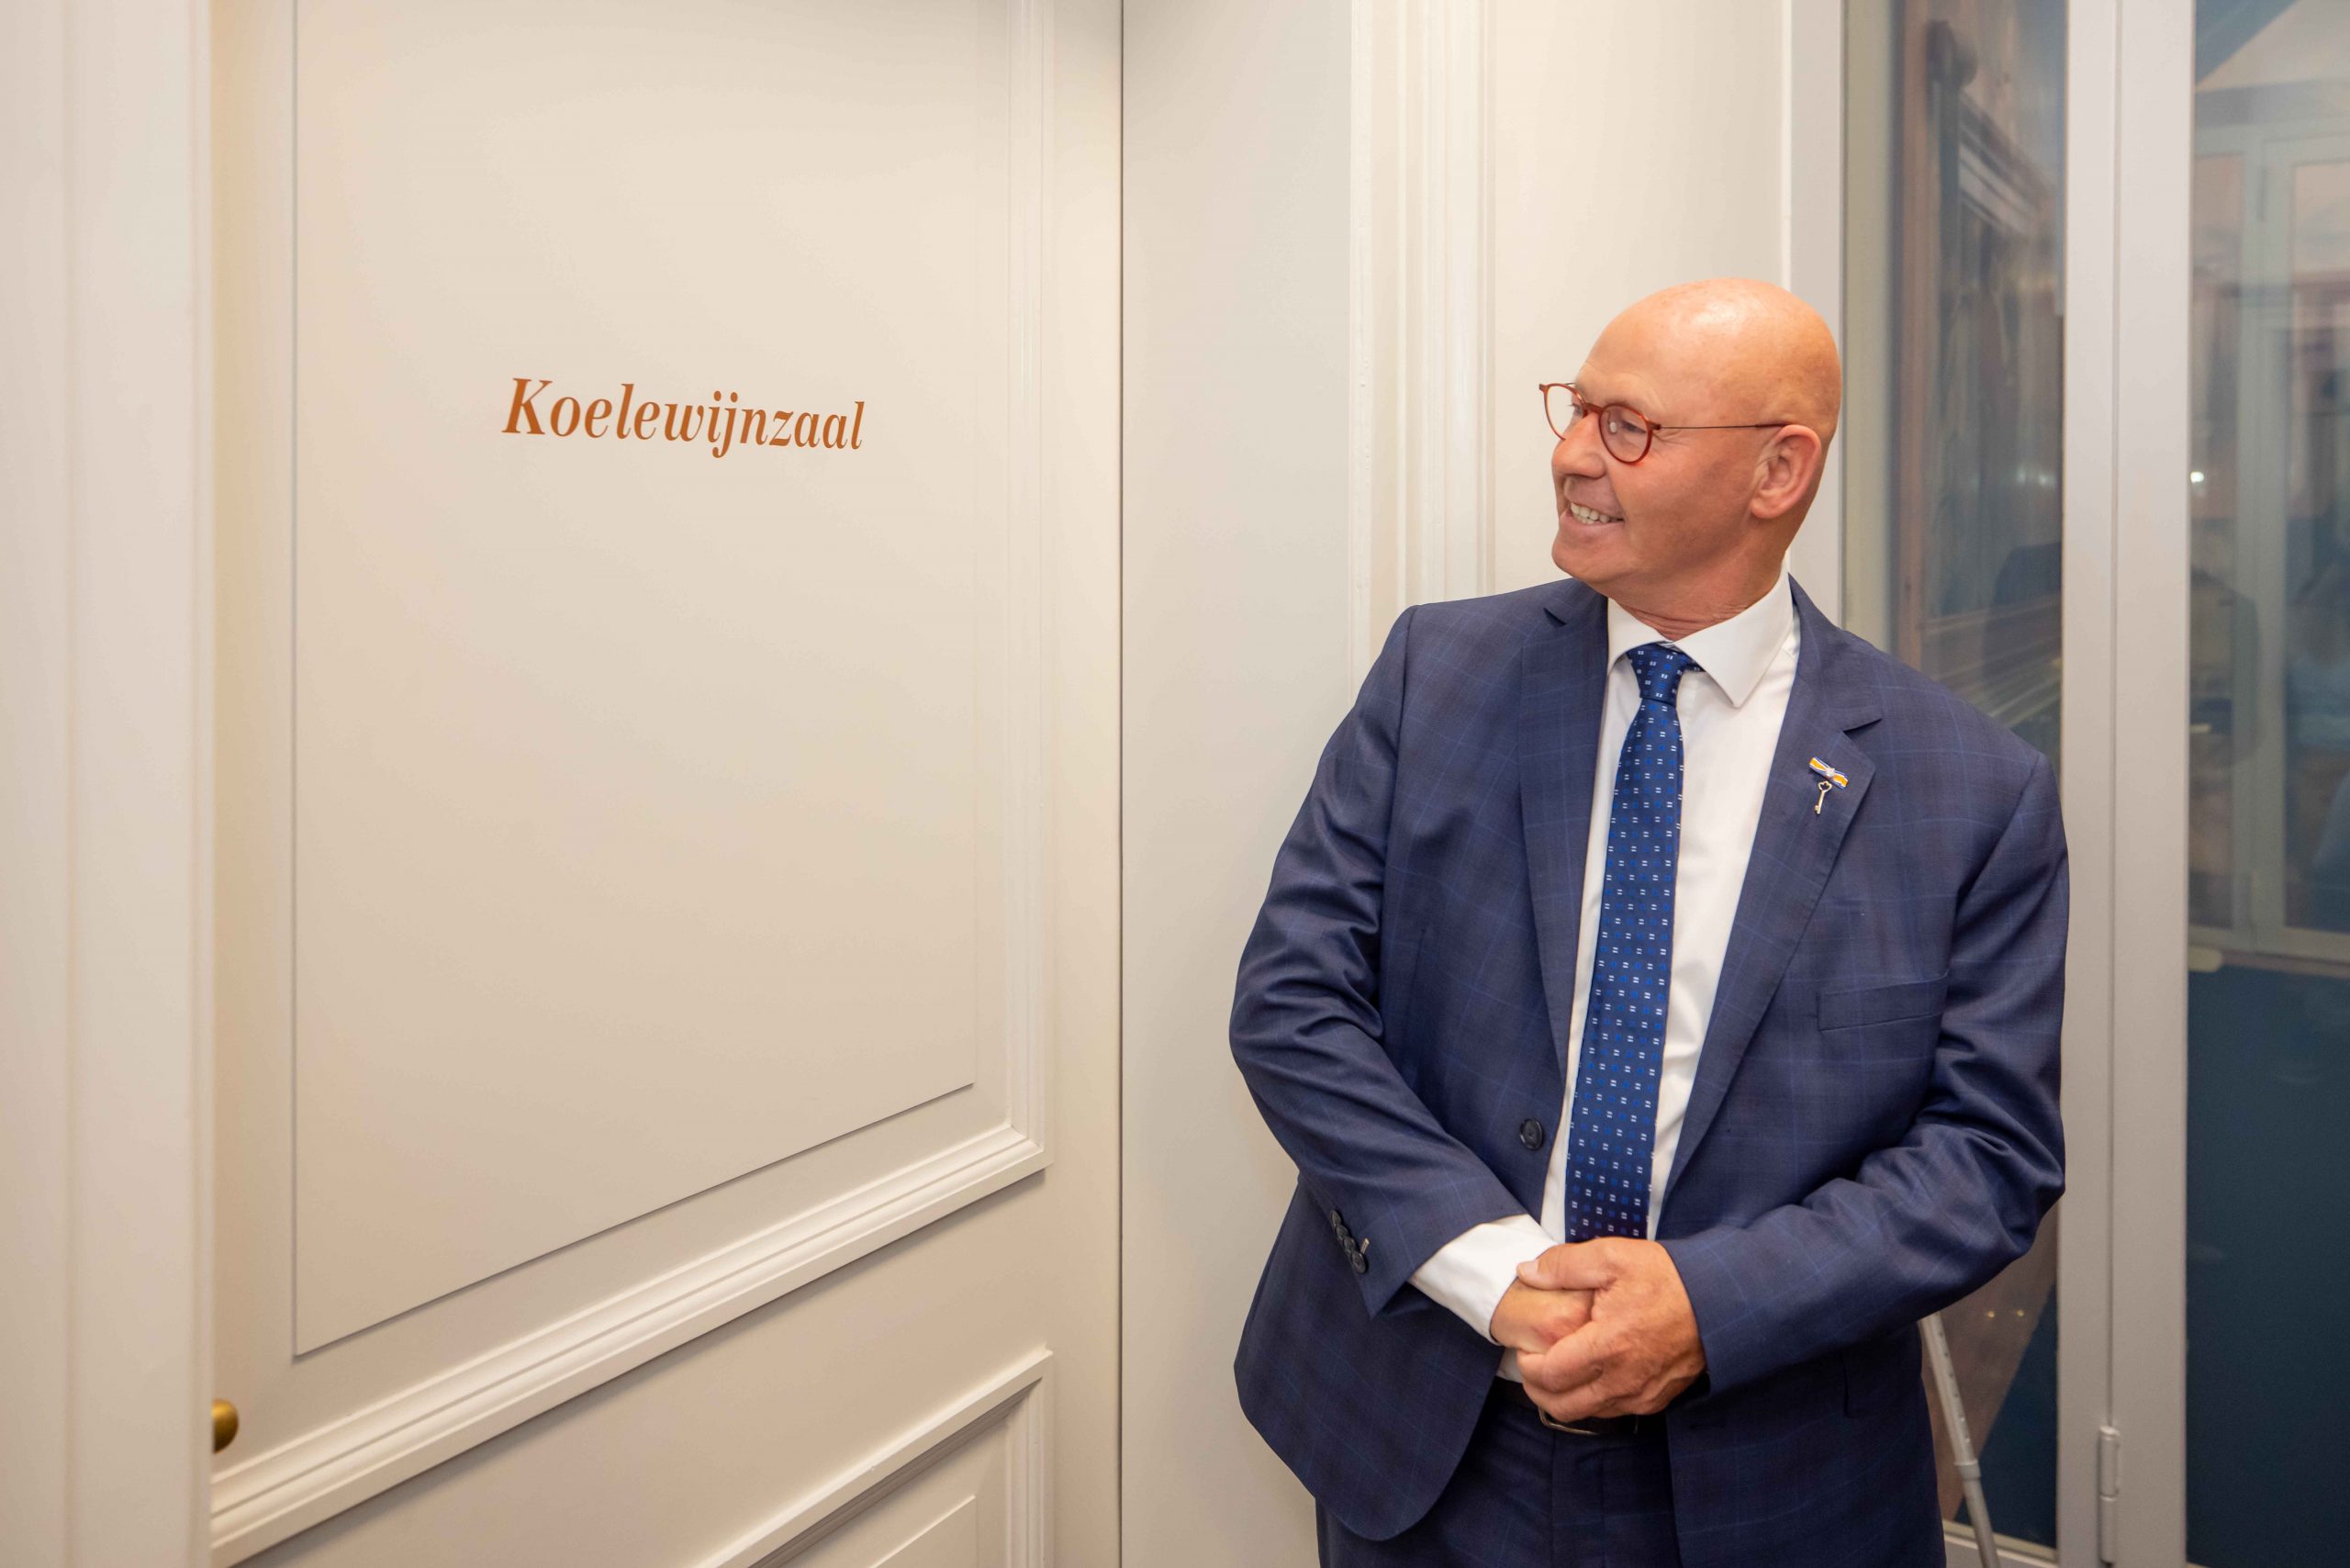 Zaal ‘bestuur en recht’ van Stedelijk Museum Kampen vernoemd naar Bort Koelewijn